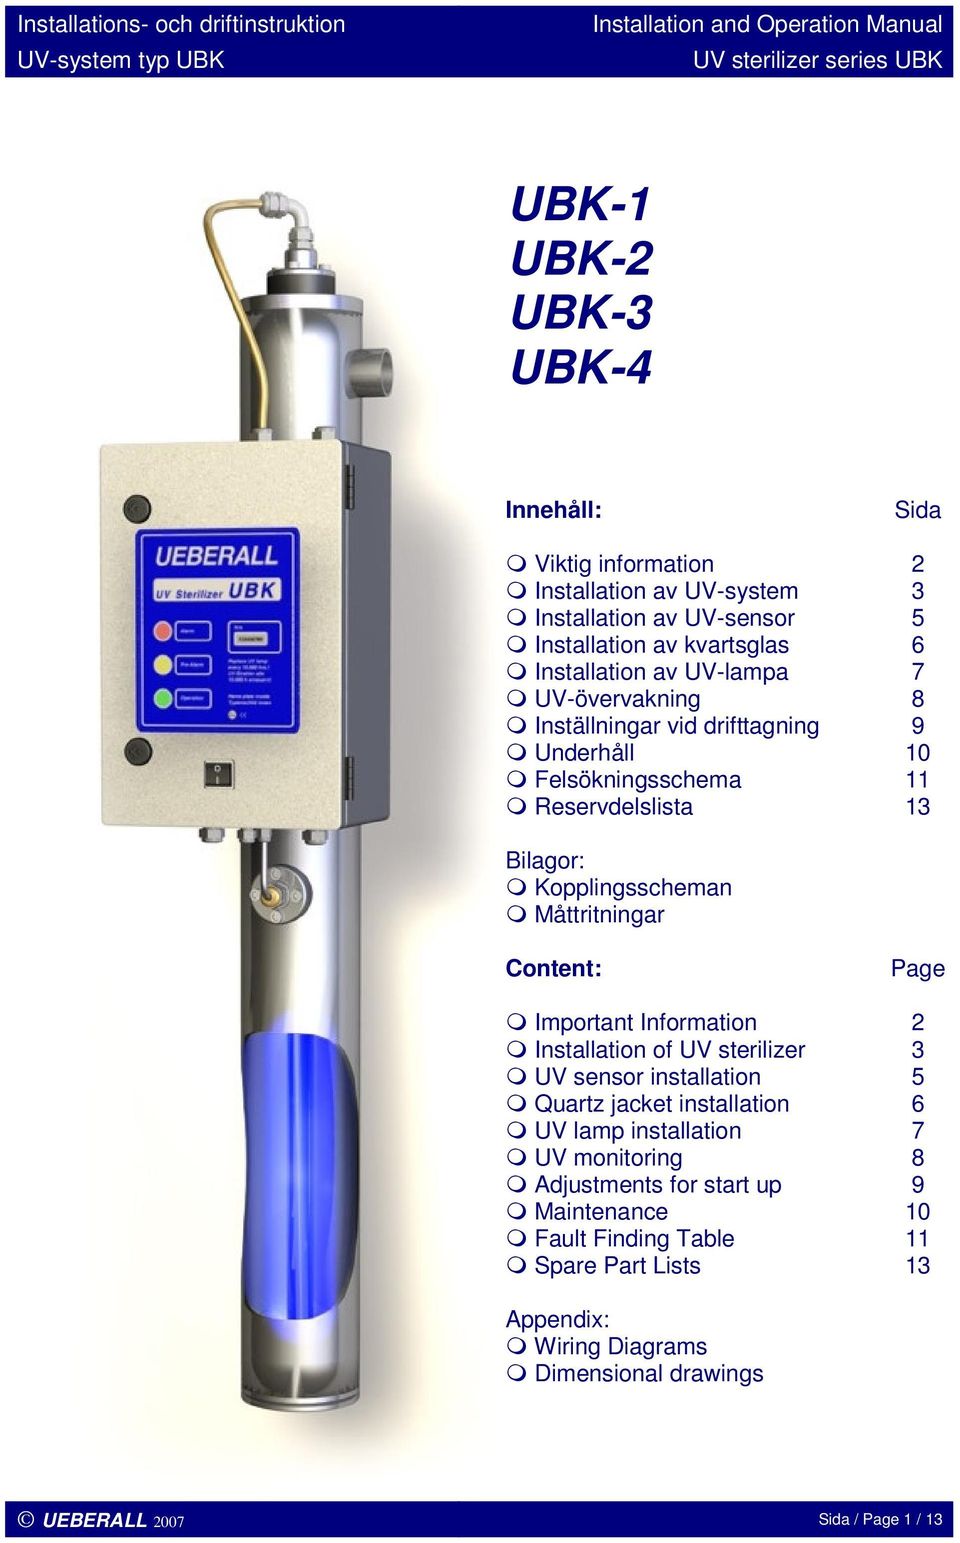 Content: Page Important Information 2 Installation of UV sterilizer 3 UV sensor installation 5 Quartz jacket installation 6 UV lamp installation 7 UV monitoring